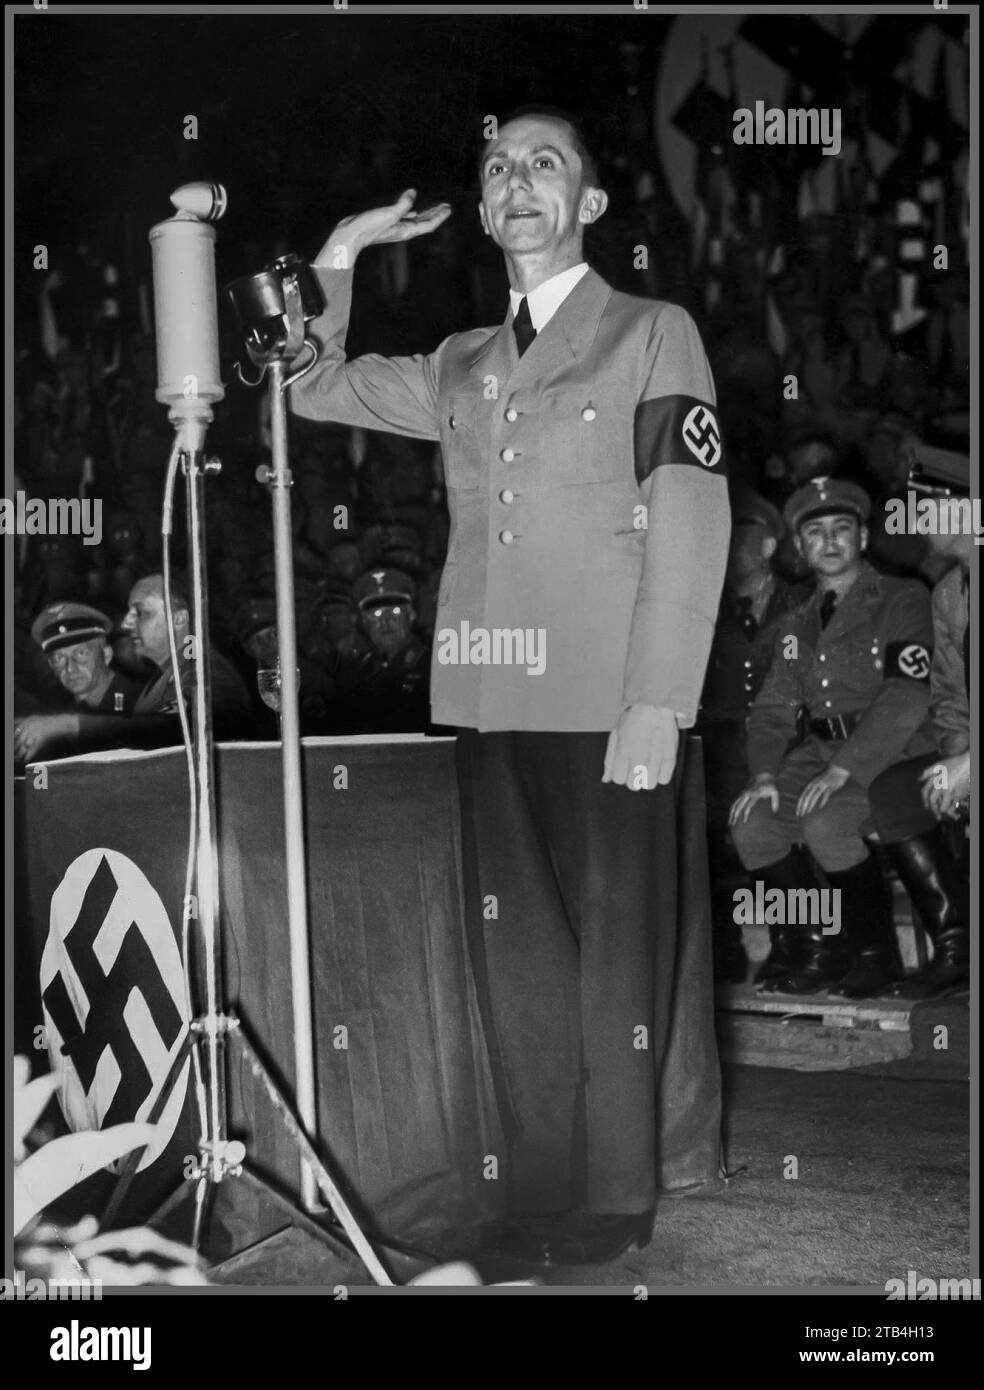 GOEBBELS 1930-er Joseph Goebbels bei einer politischen Kundgebung, die den Nazi begrüßte Er war ein berüchtigter führender Propagandastratege des Nazis, Joseph Goebbels trug Militäruniform mit Hakenkreuzarmband bei einer Nazi-Kundgebung in den 1930er Jahren Stockfoto